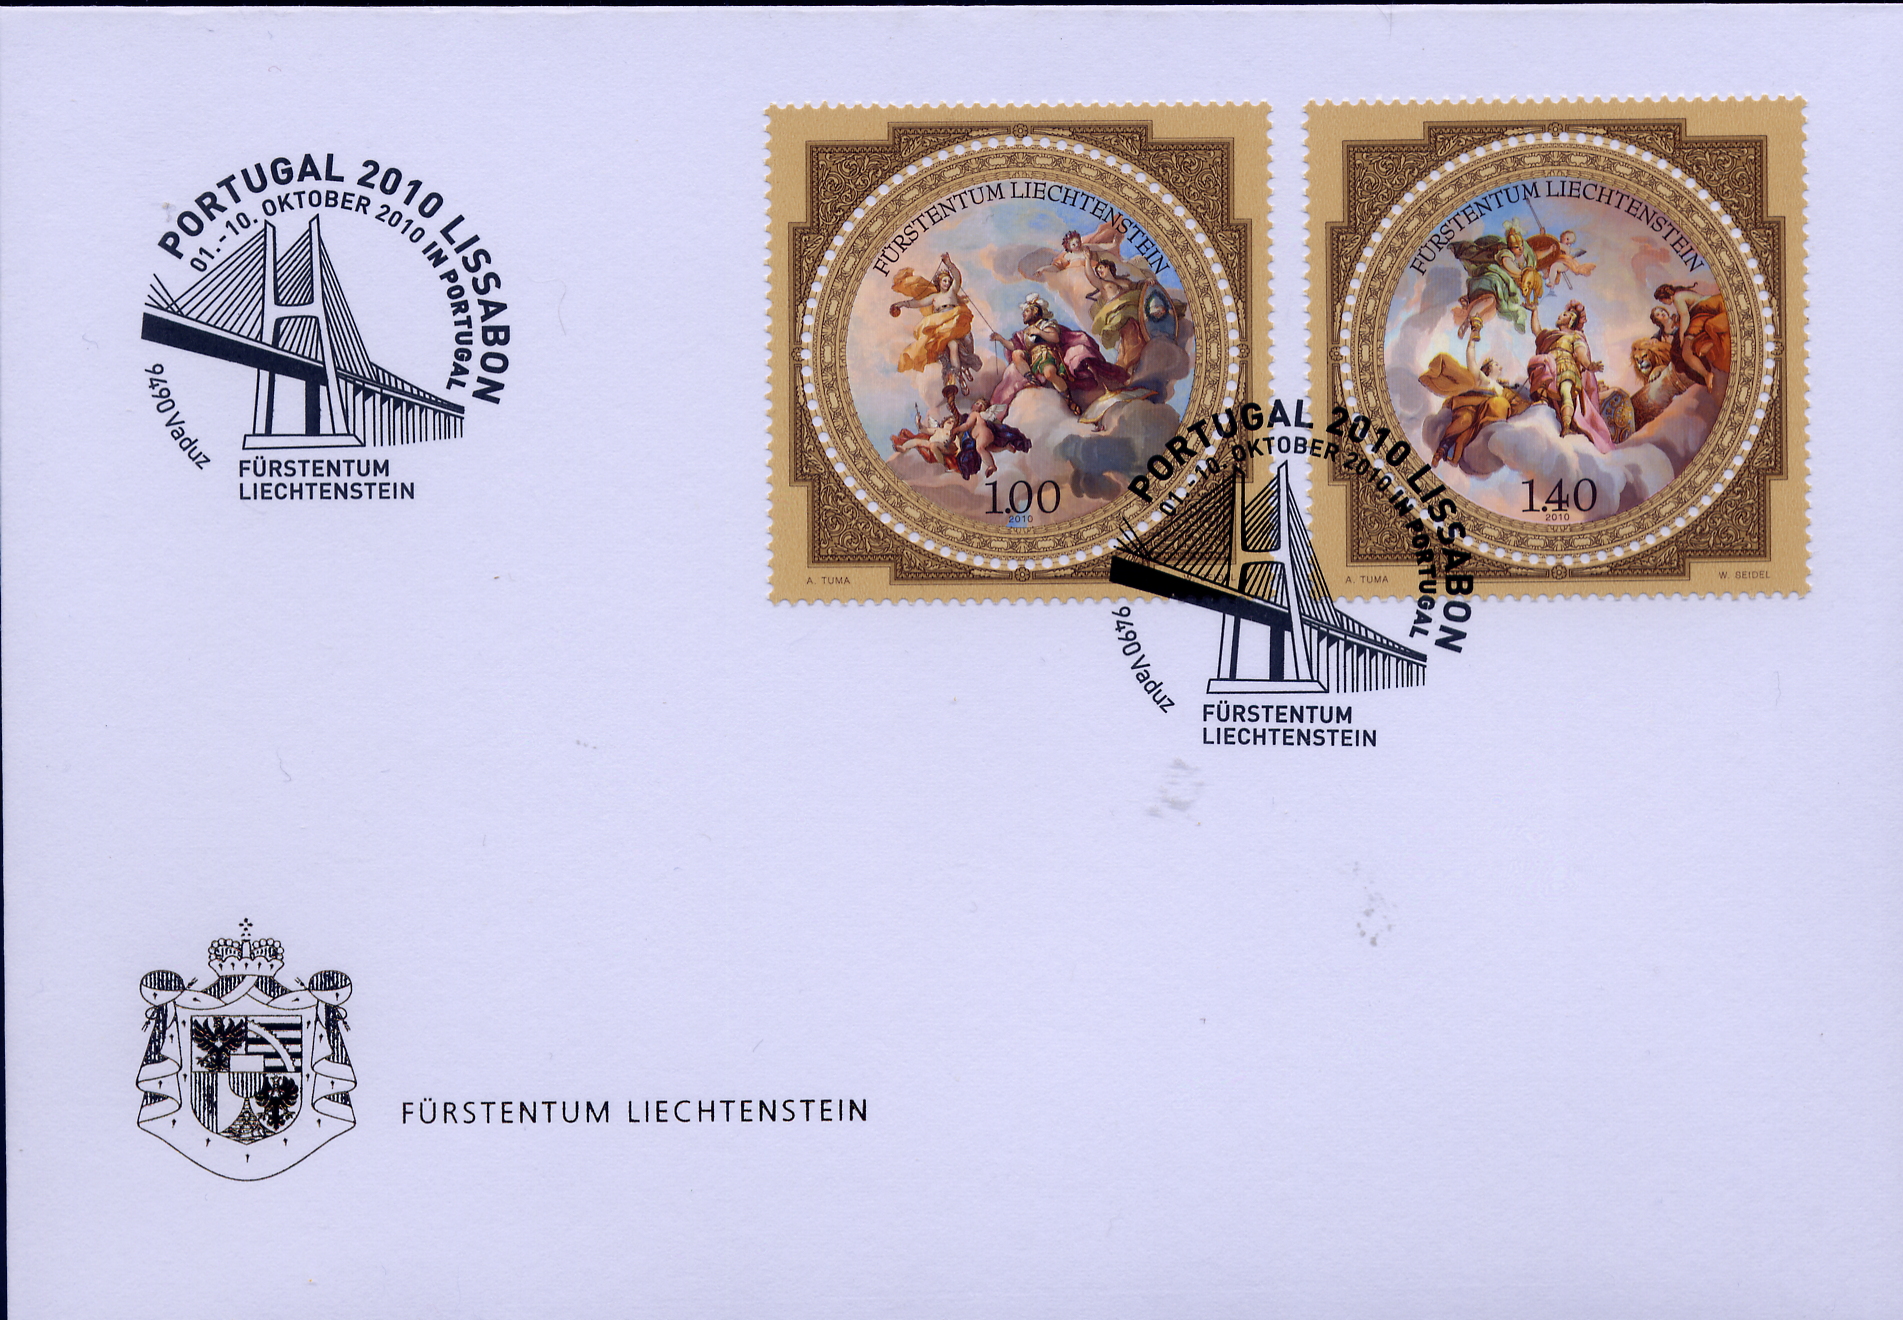 https://swiss-stamps.org/wp-content/uploads/2023/12/2010-10-Lissabon.jpg